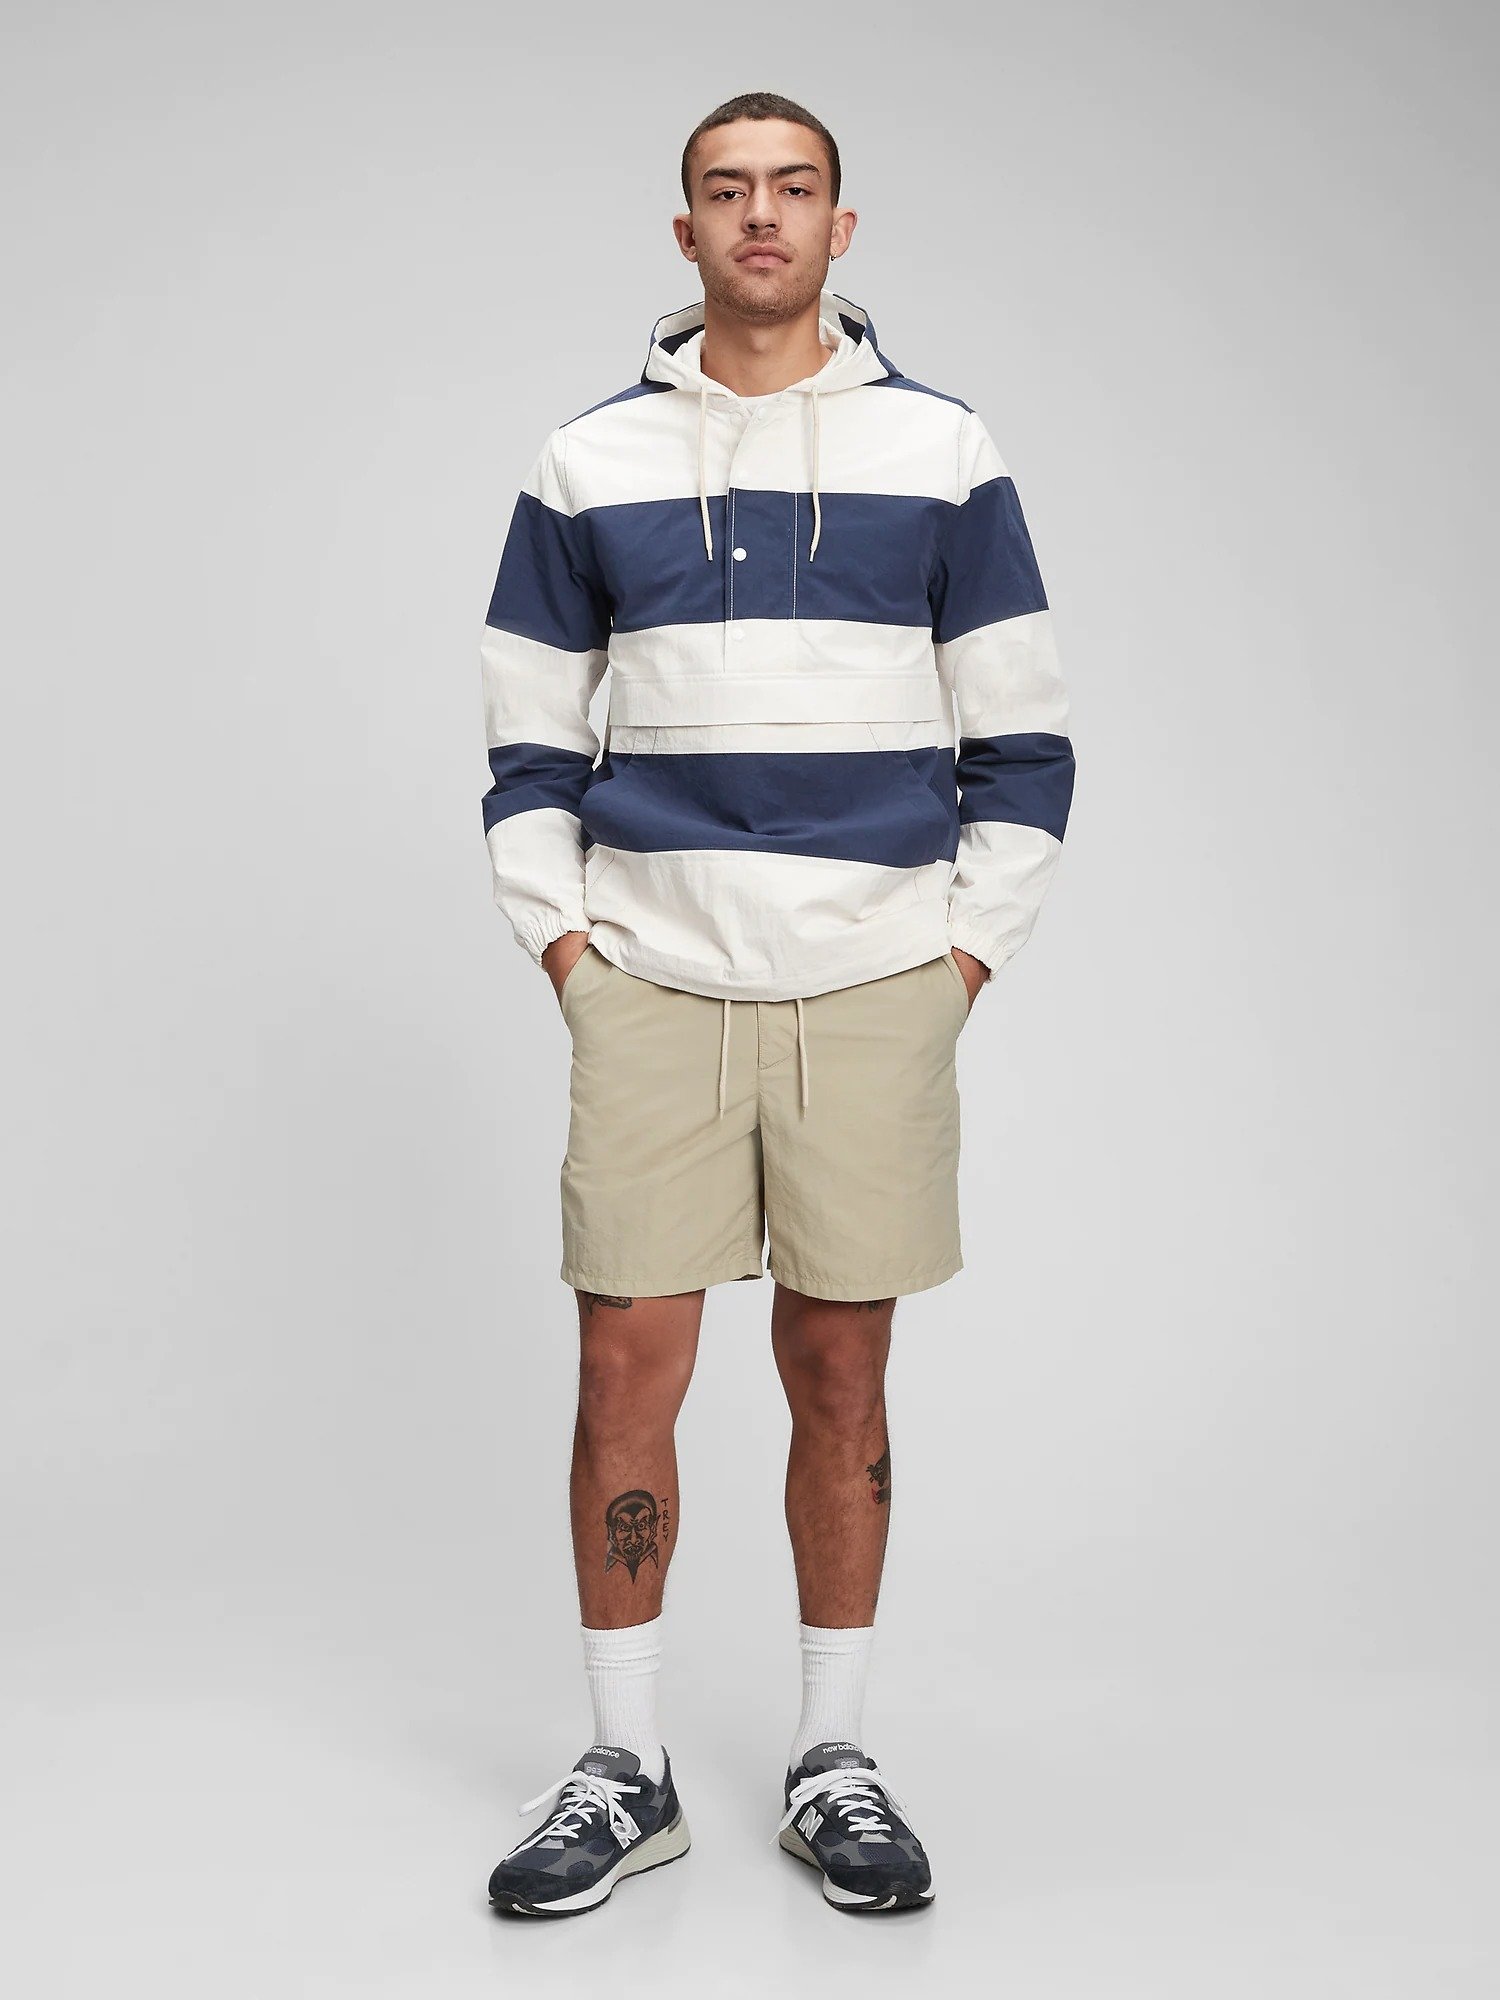 Rugby Pullover Kapüşonlu Ceket product image